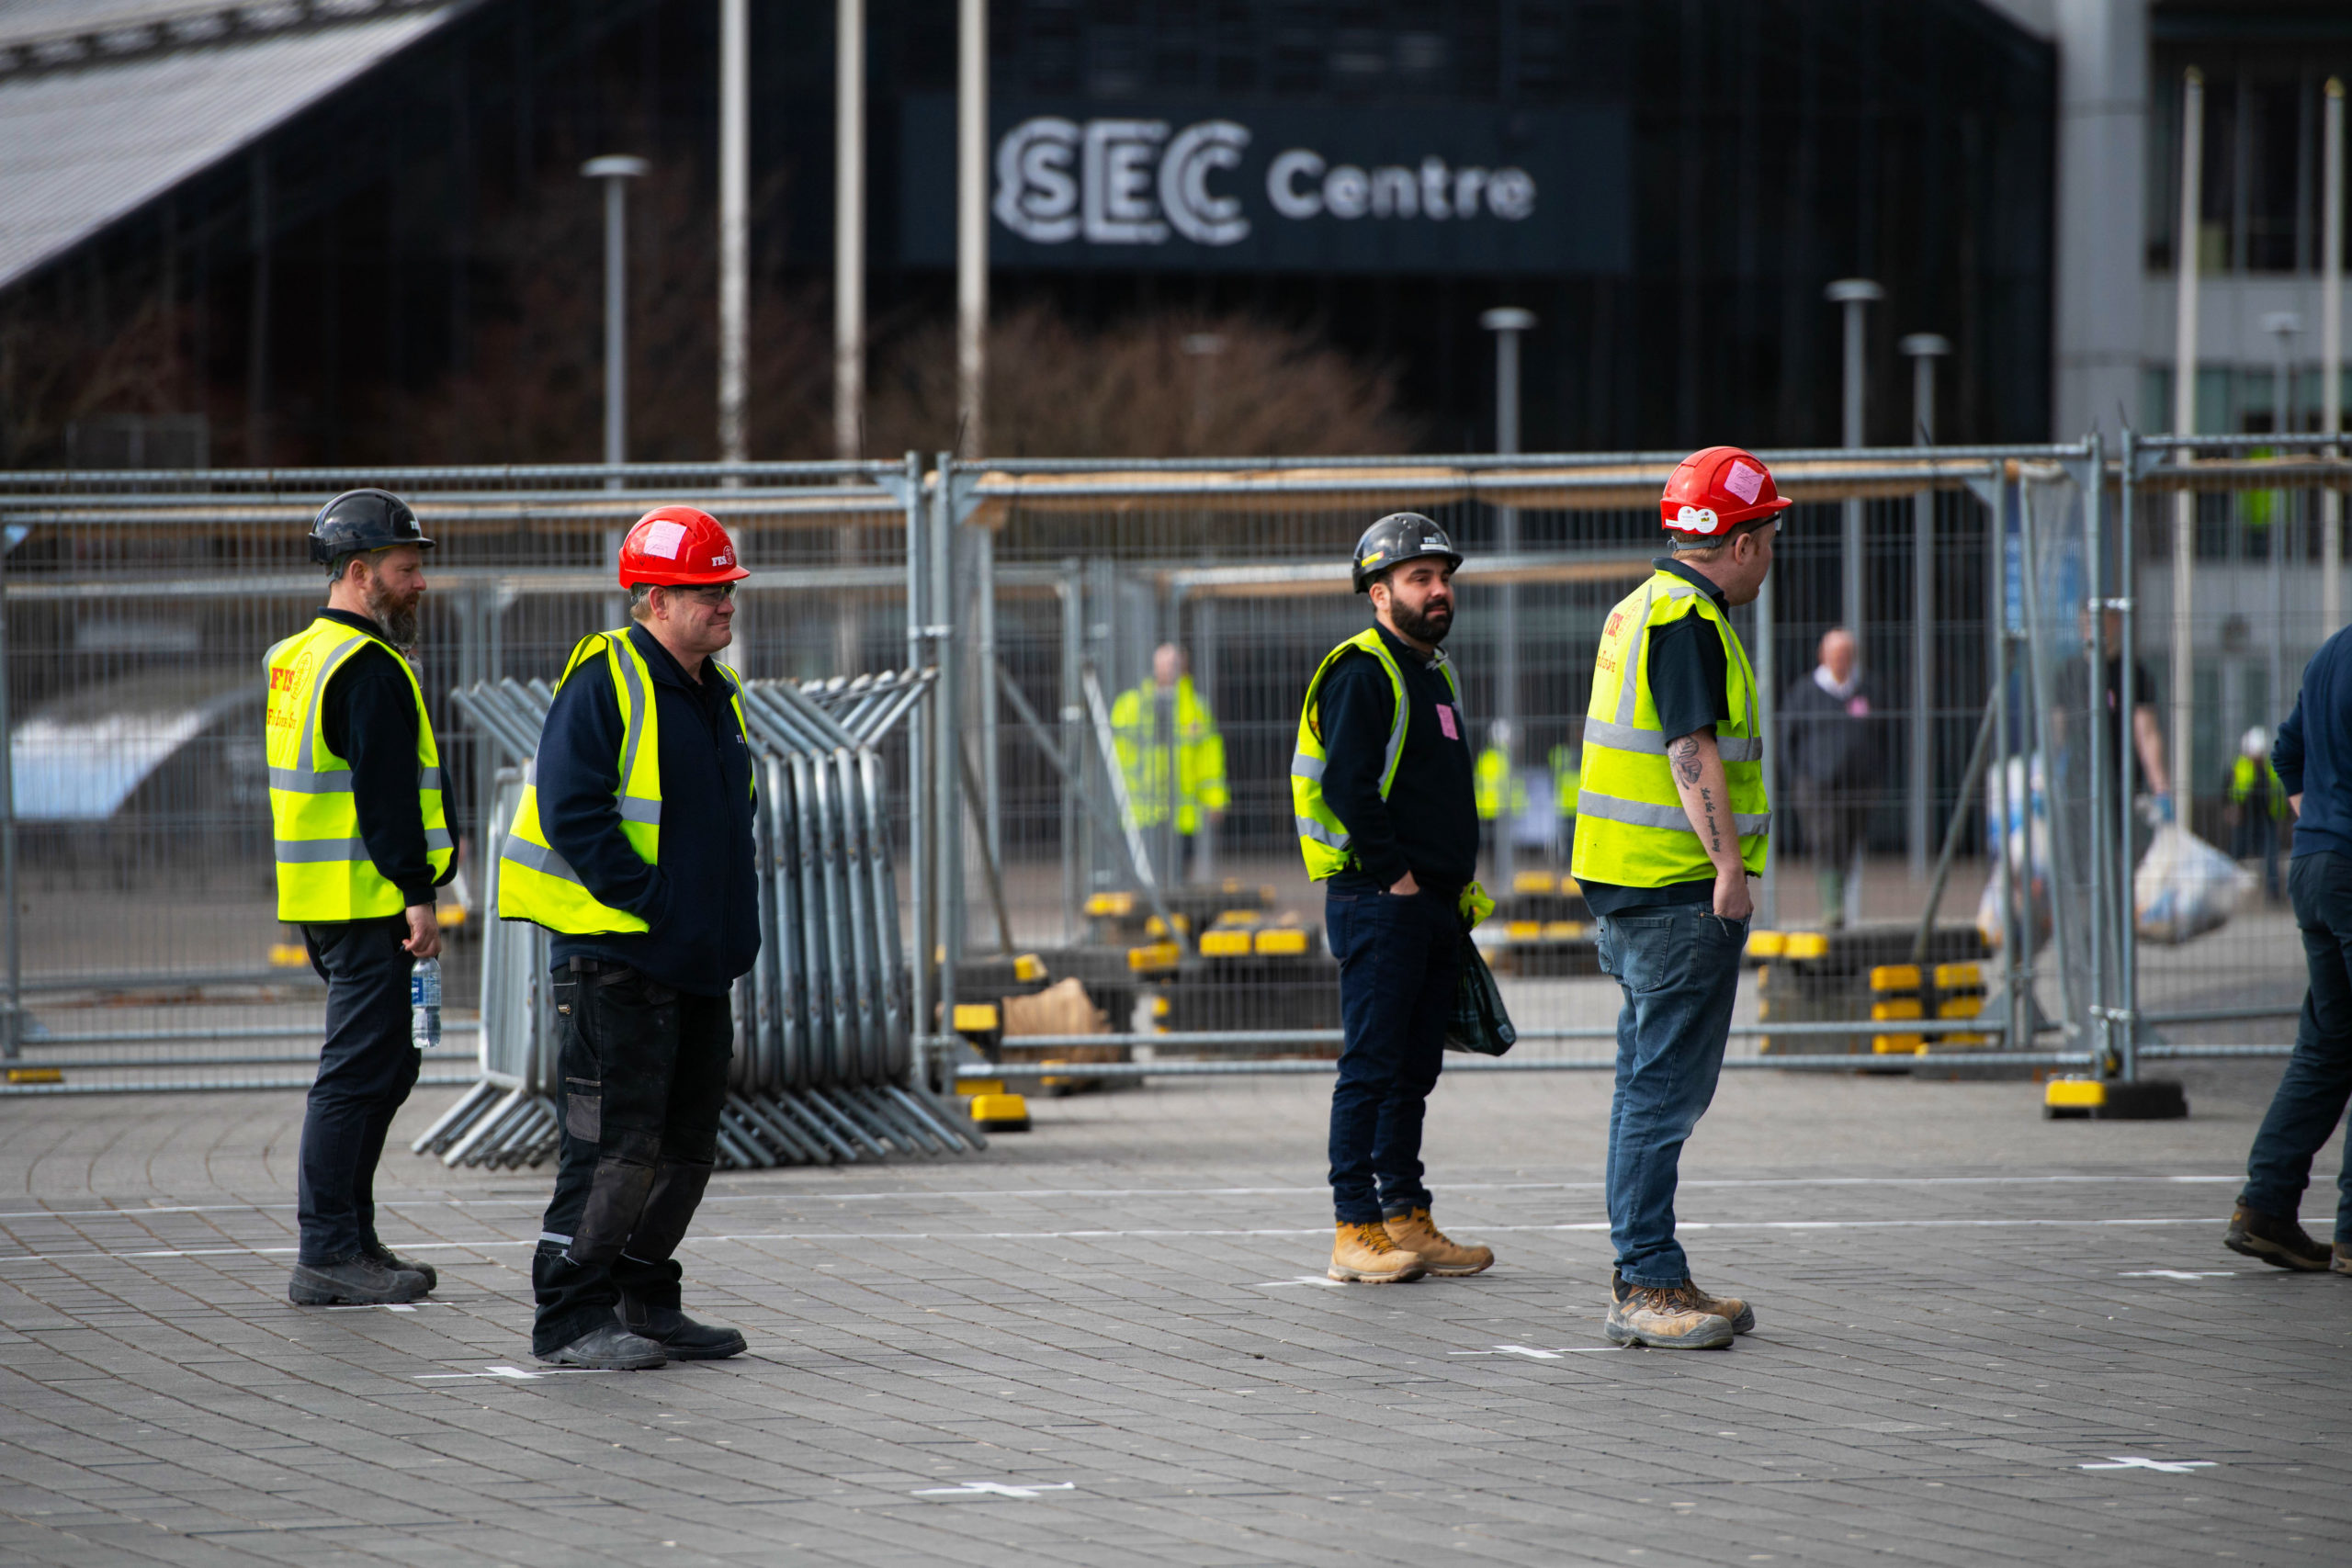 Contractors at the SEC in Glasgow as work begins last week to build new NHS Louisa Jordan hospital